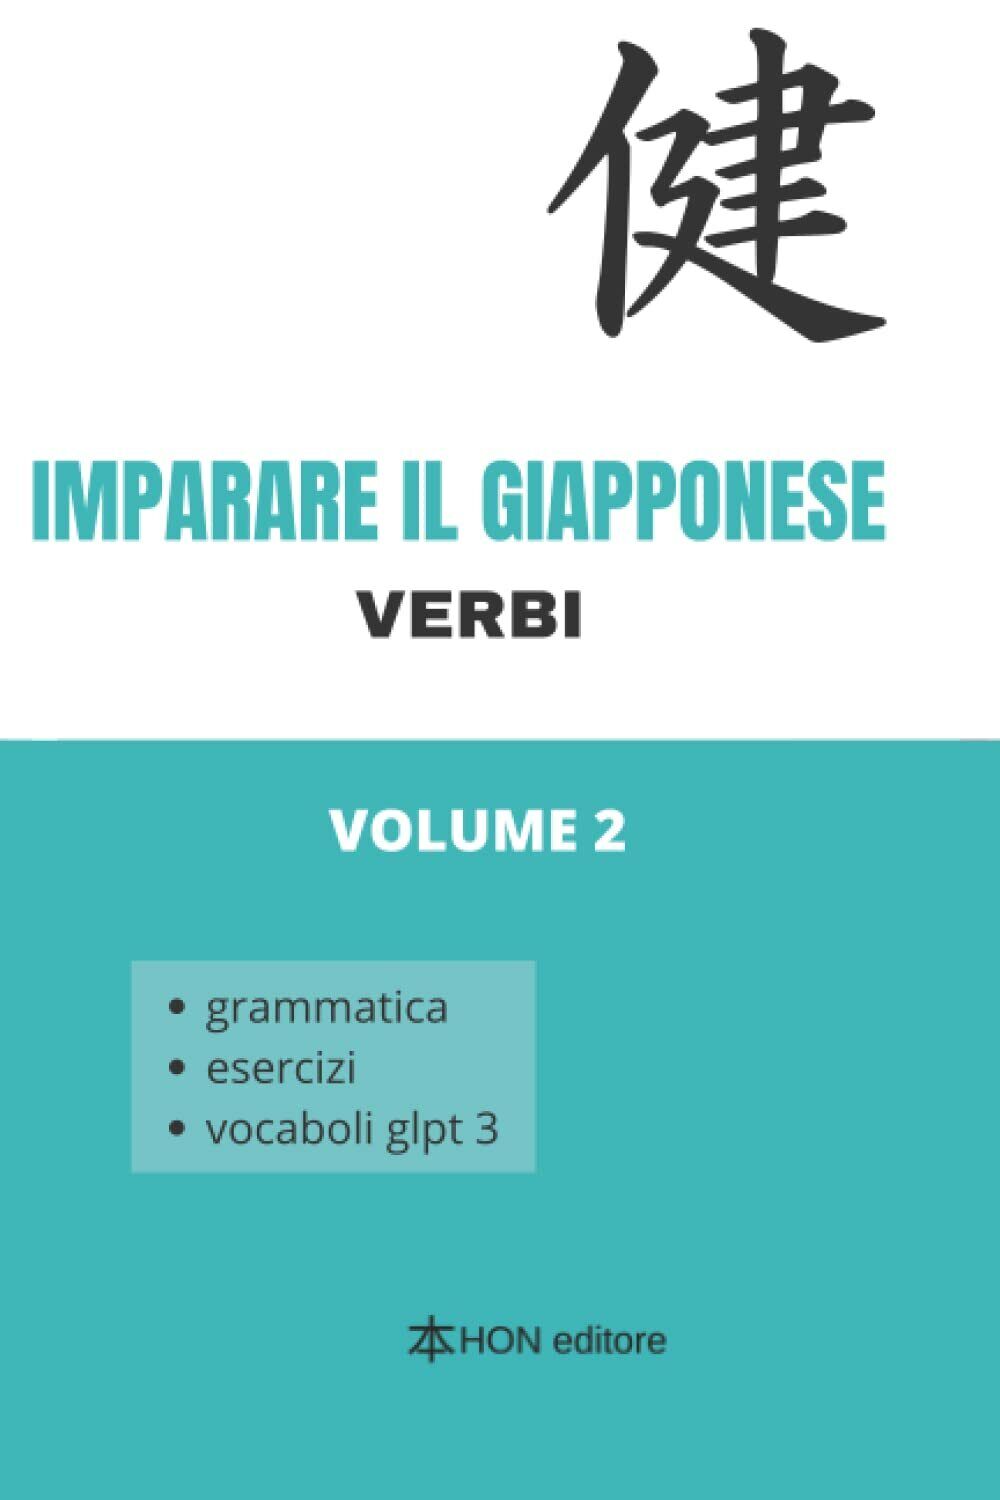 Imparare il giapponese: Volume 2 i verbi, grammatica, esercizi, vocaboli glpt3 d